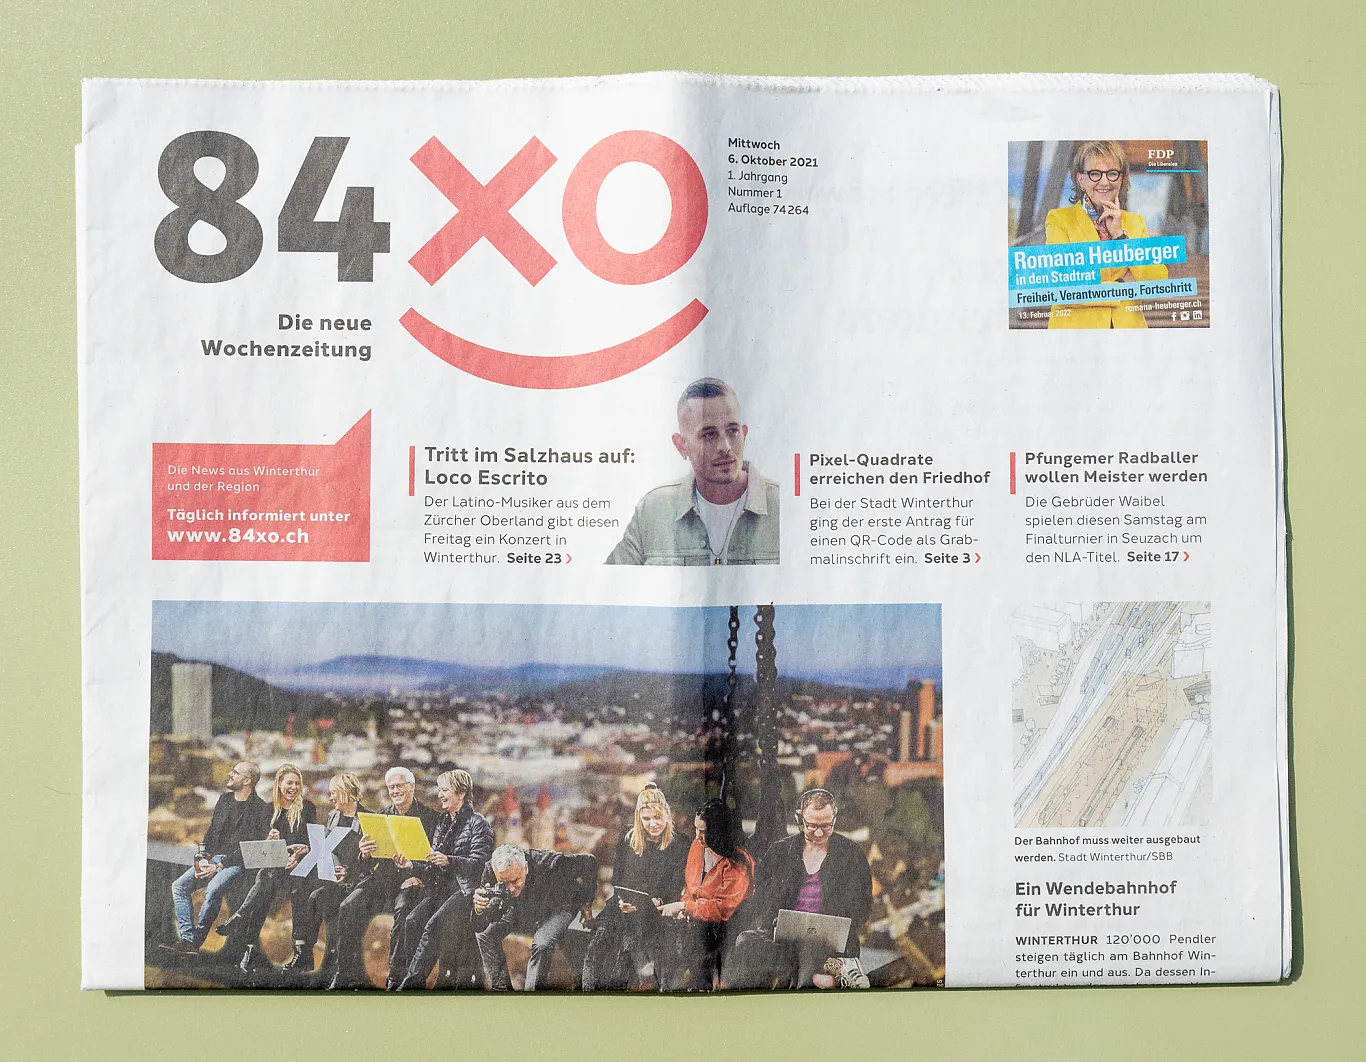 84xo - Die neue Wochenzeitung . Corporate Design